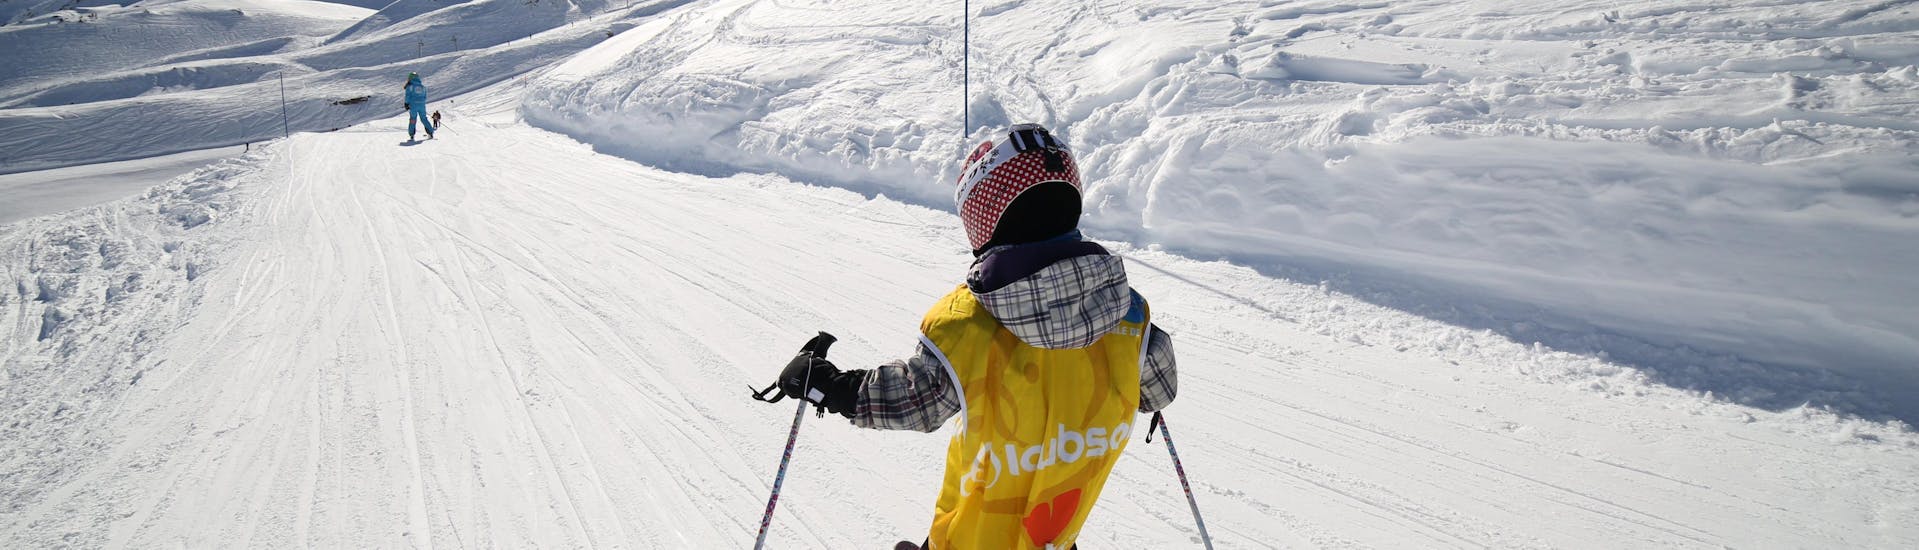 Un pequeño esquiador baja por una nevada pista de esquí durante una clase particular para niños - Vacaciones con la escuela de esquí ESI Font Romeu.